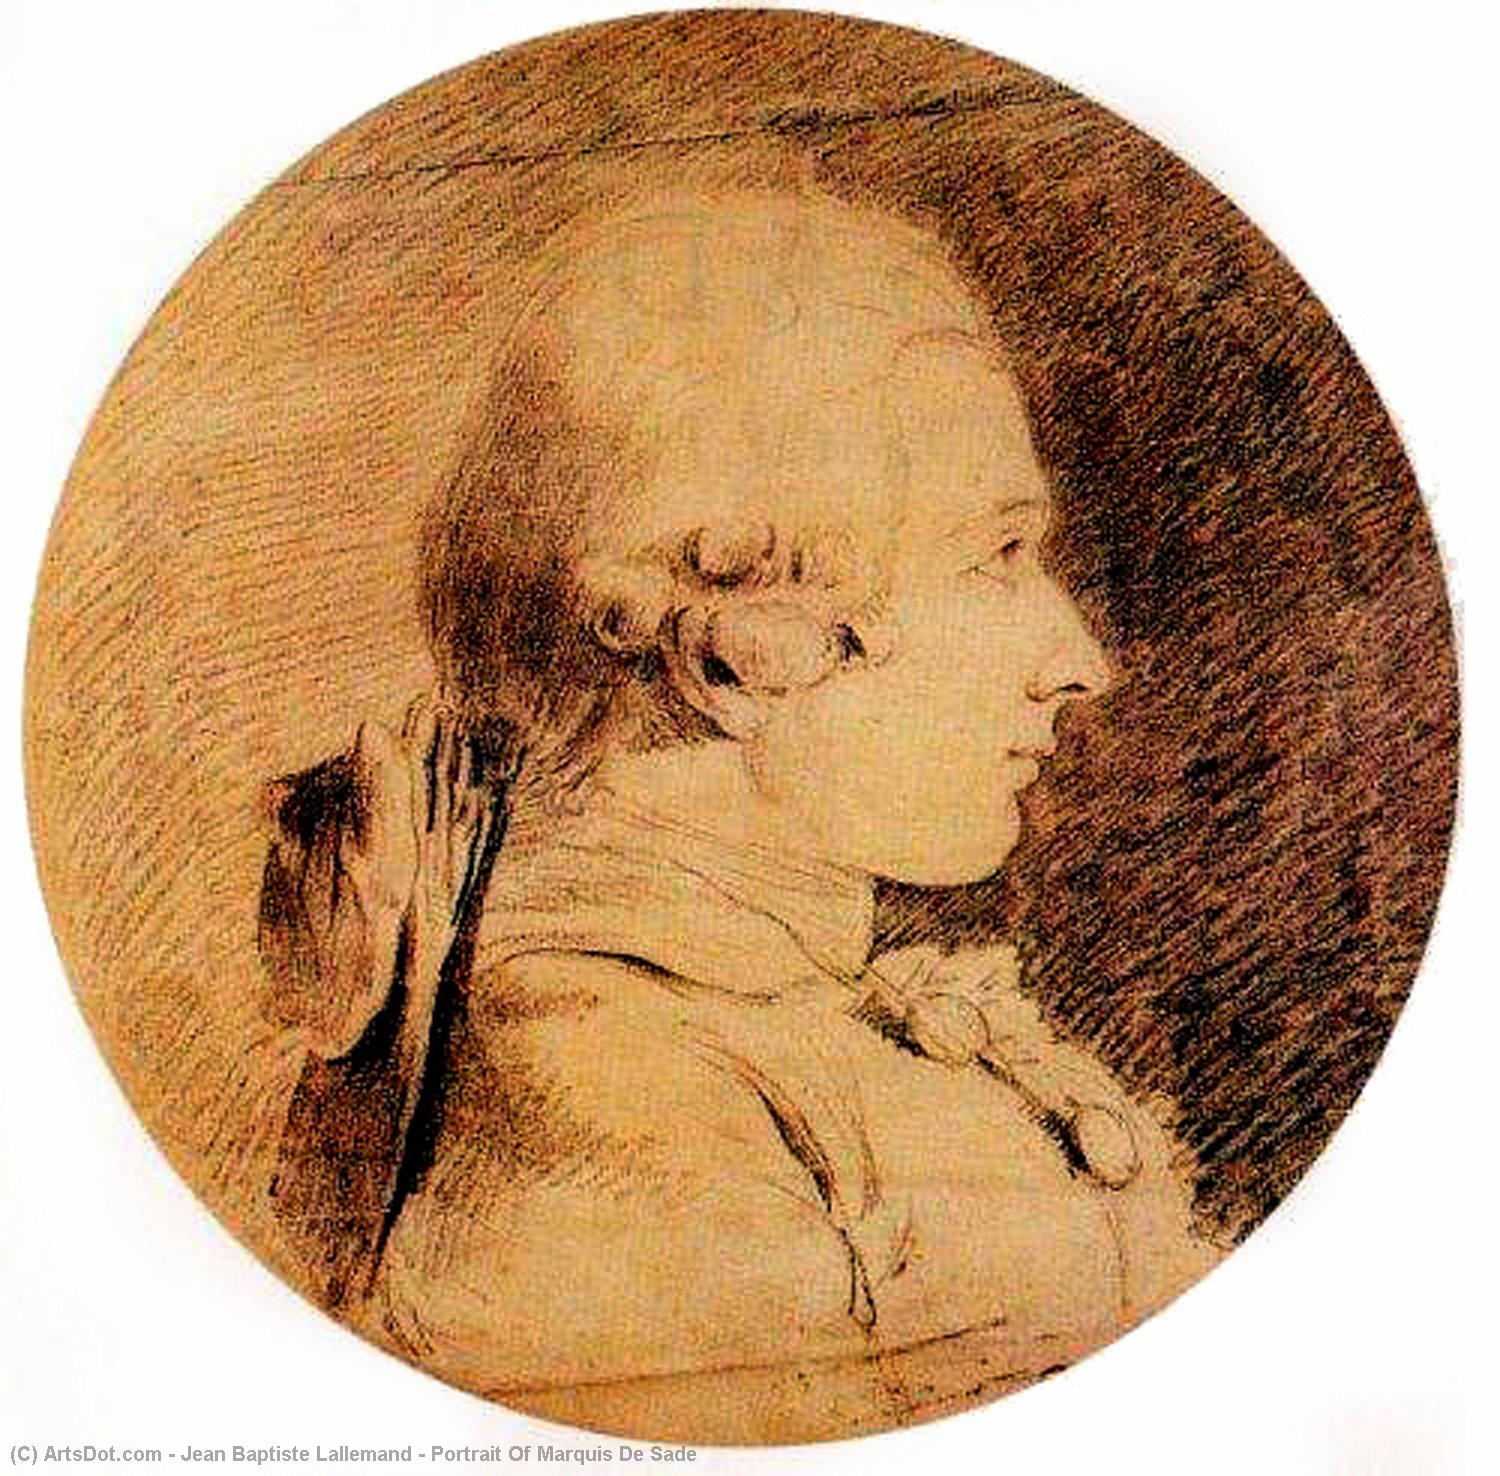 Wikoo.org - موسوعة الفنون الجميلة - اللوحة، العمل الفني Jean Baptiste Lallemand - Portrait Of Marquis De Sade